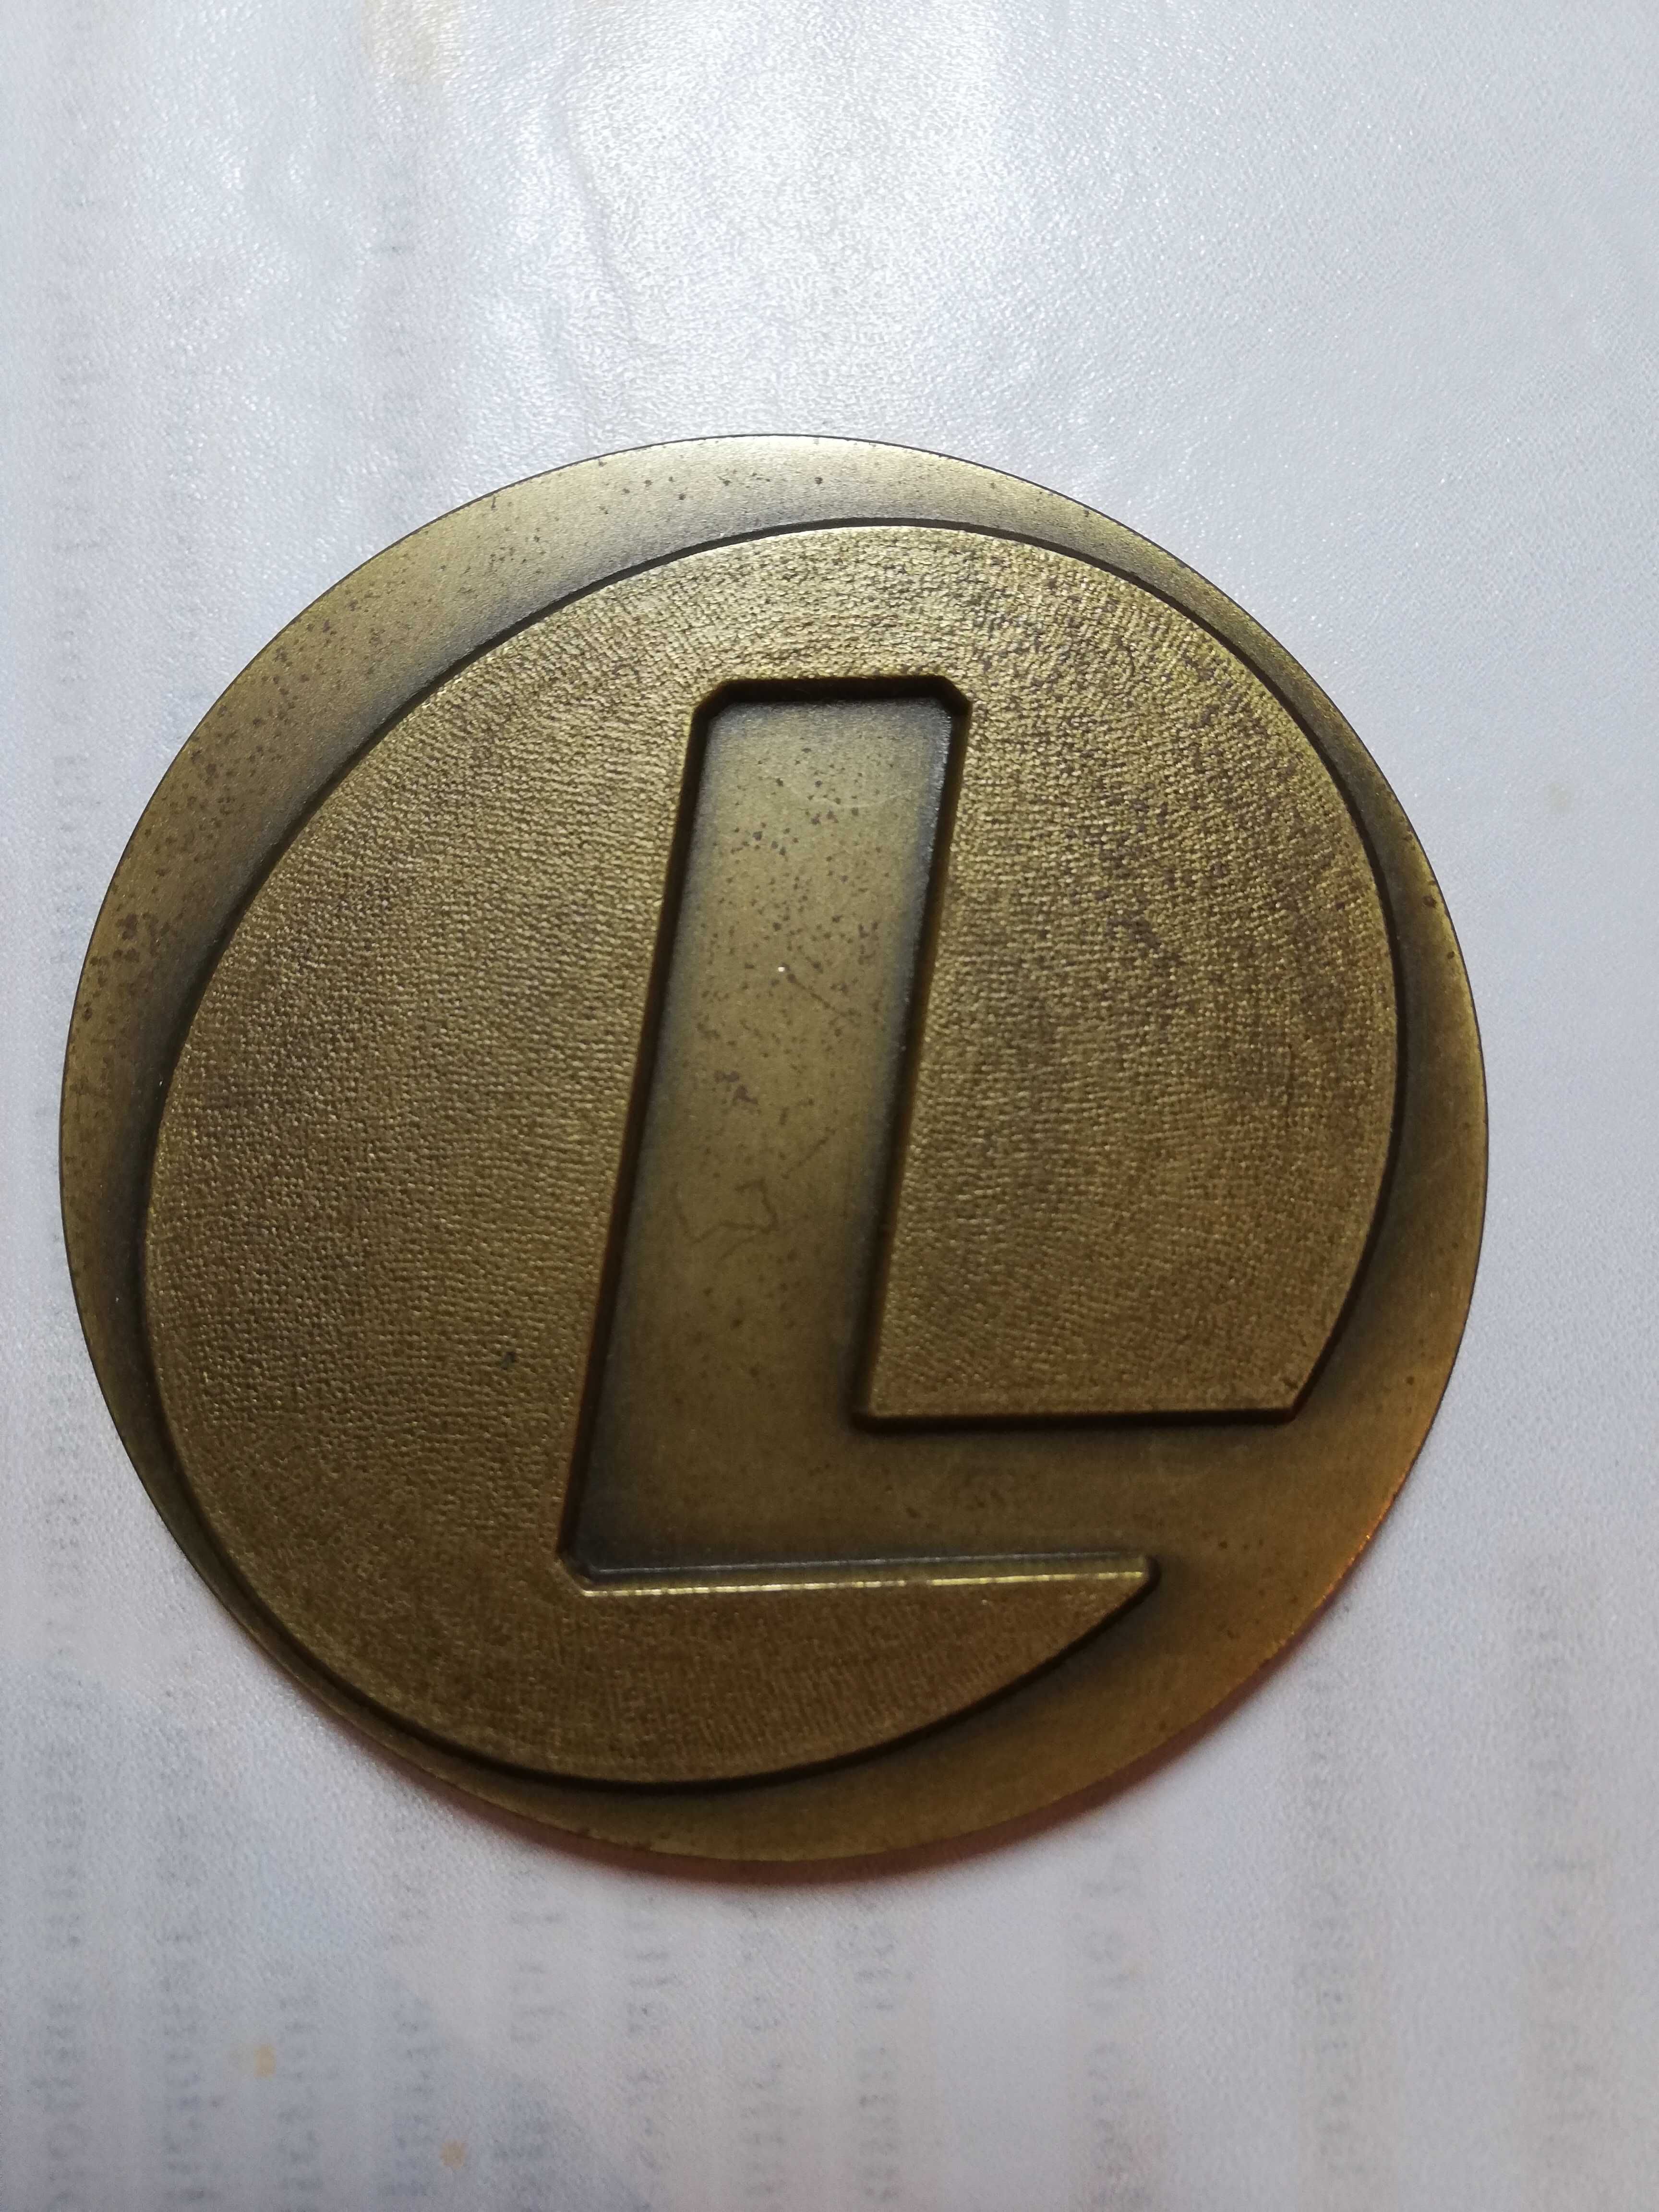 Medalha da inauguração da Lear corporation Portugal